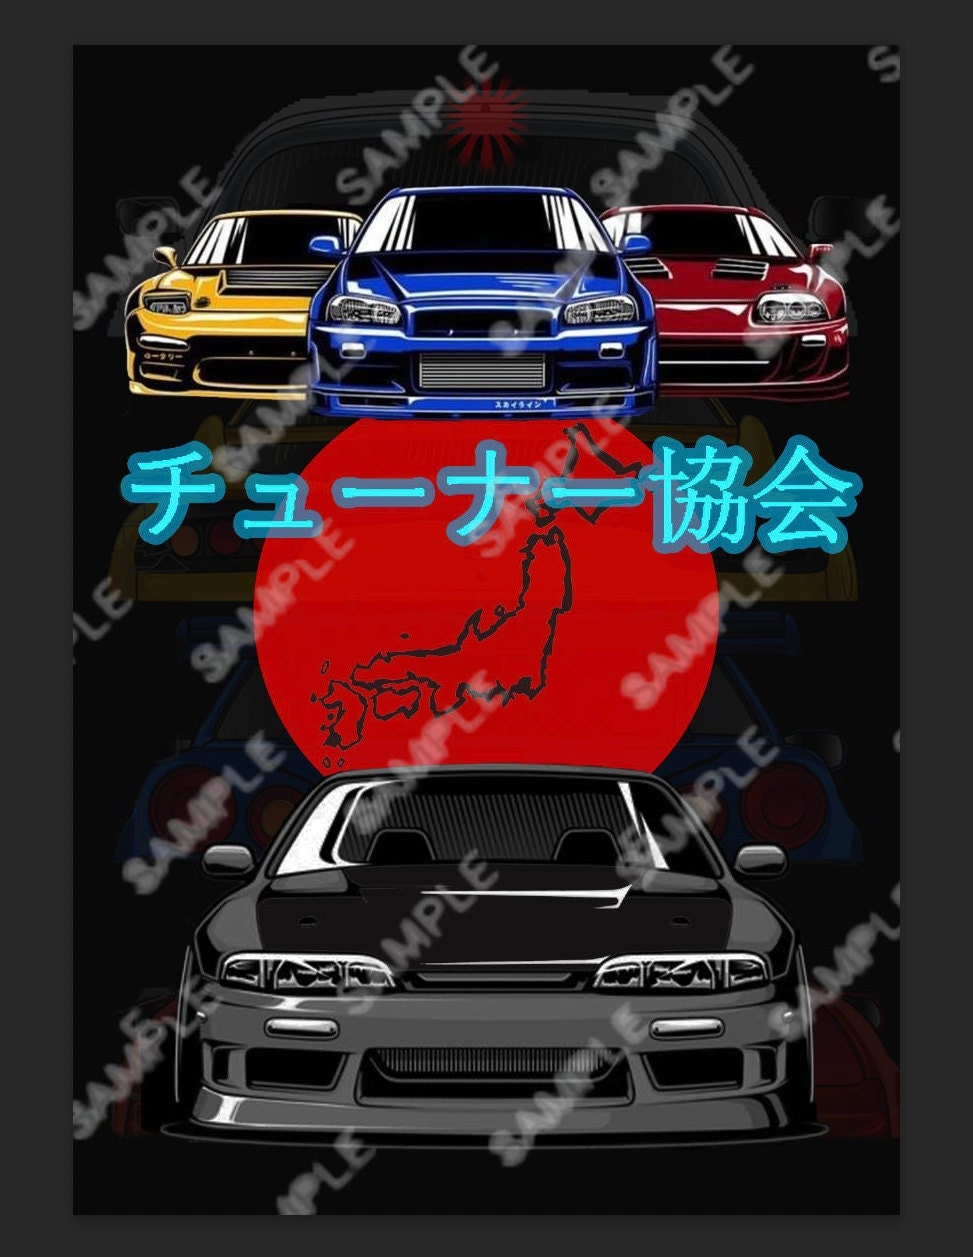 Tokyo Drift Cars iPhone Wallpaper - iPhone Wallpapers  Car iphone wallpaper,  Tokyo drift cars, Car wallpapers